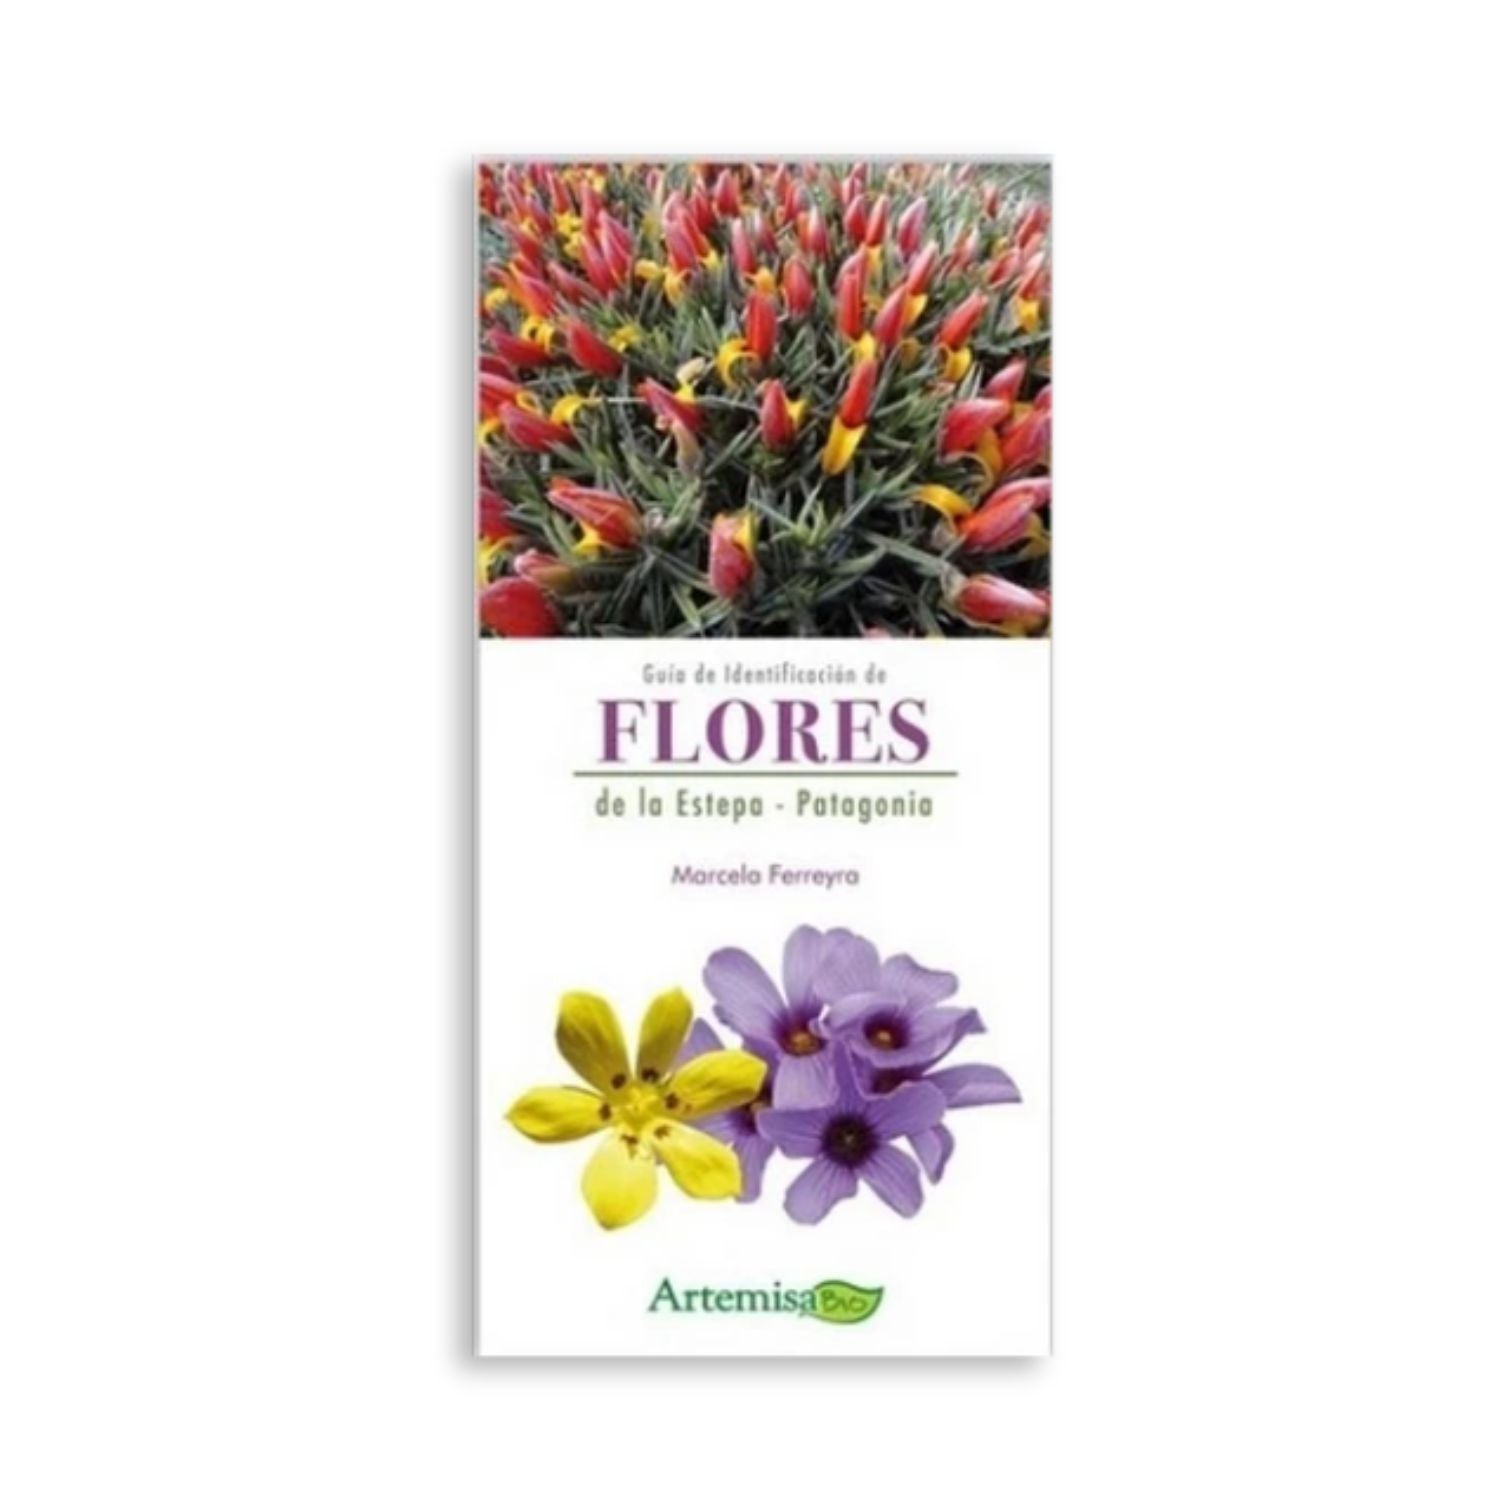 Guía de Identificación de Flores de la Estepa - Patagonia